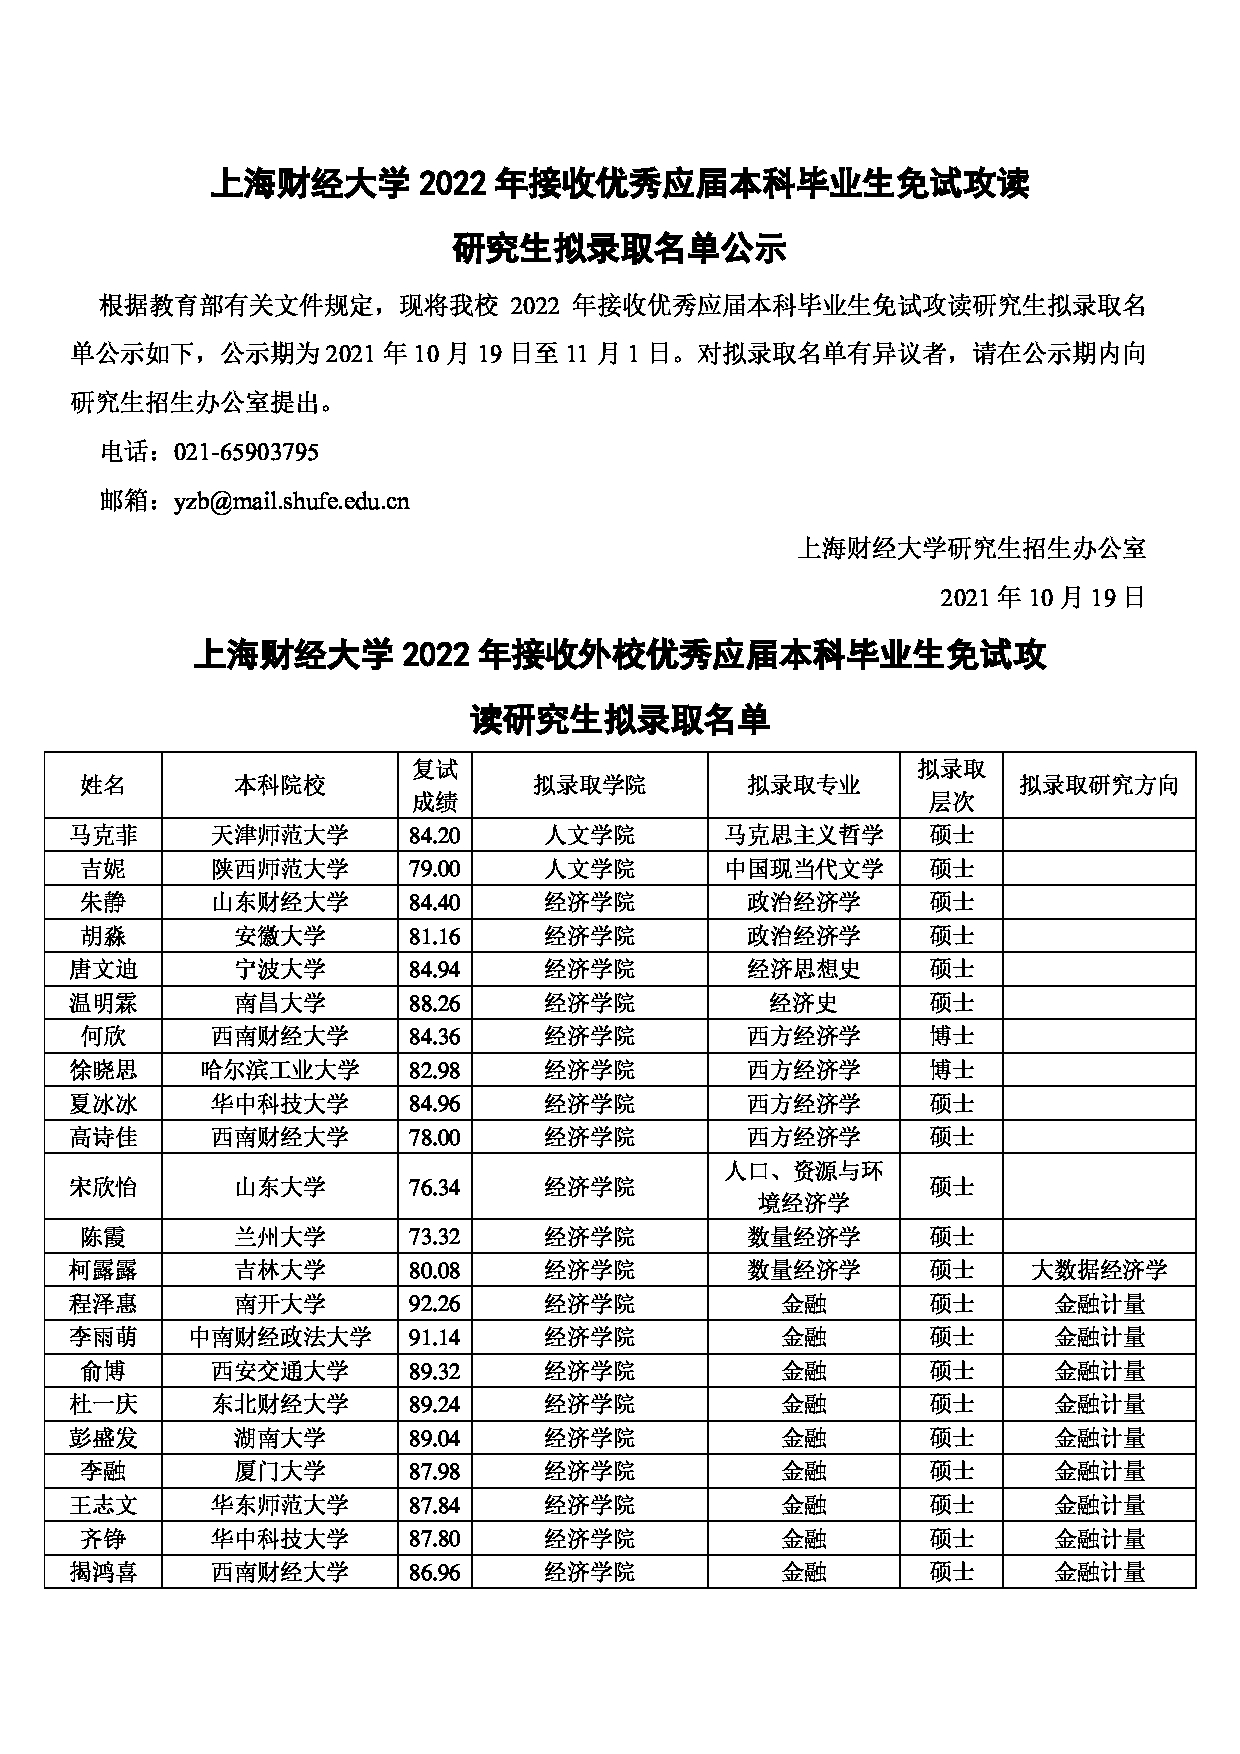 2022考研拟录取名单：上海财经大学2022年推免硕士研究生拟录取名单第1页